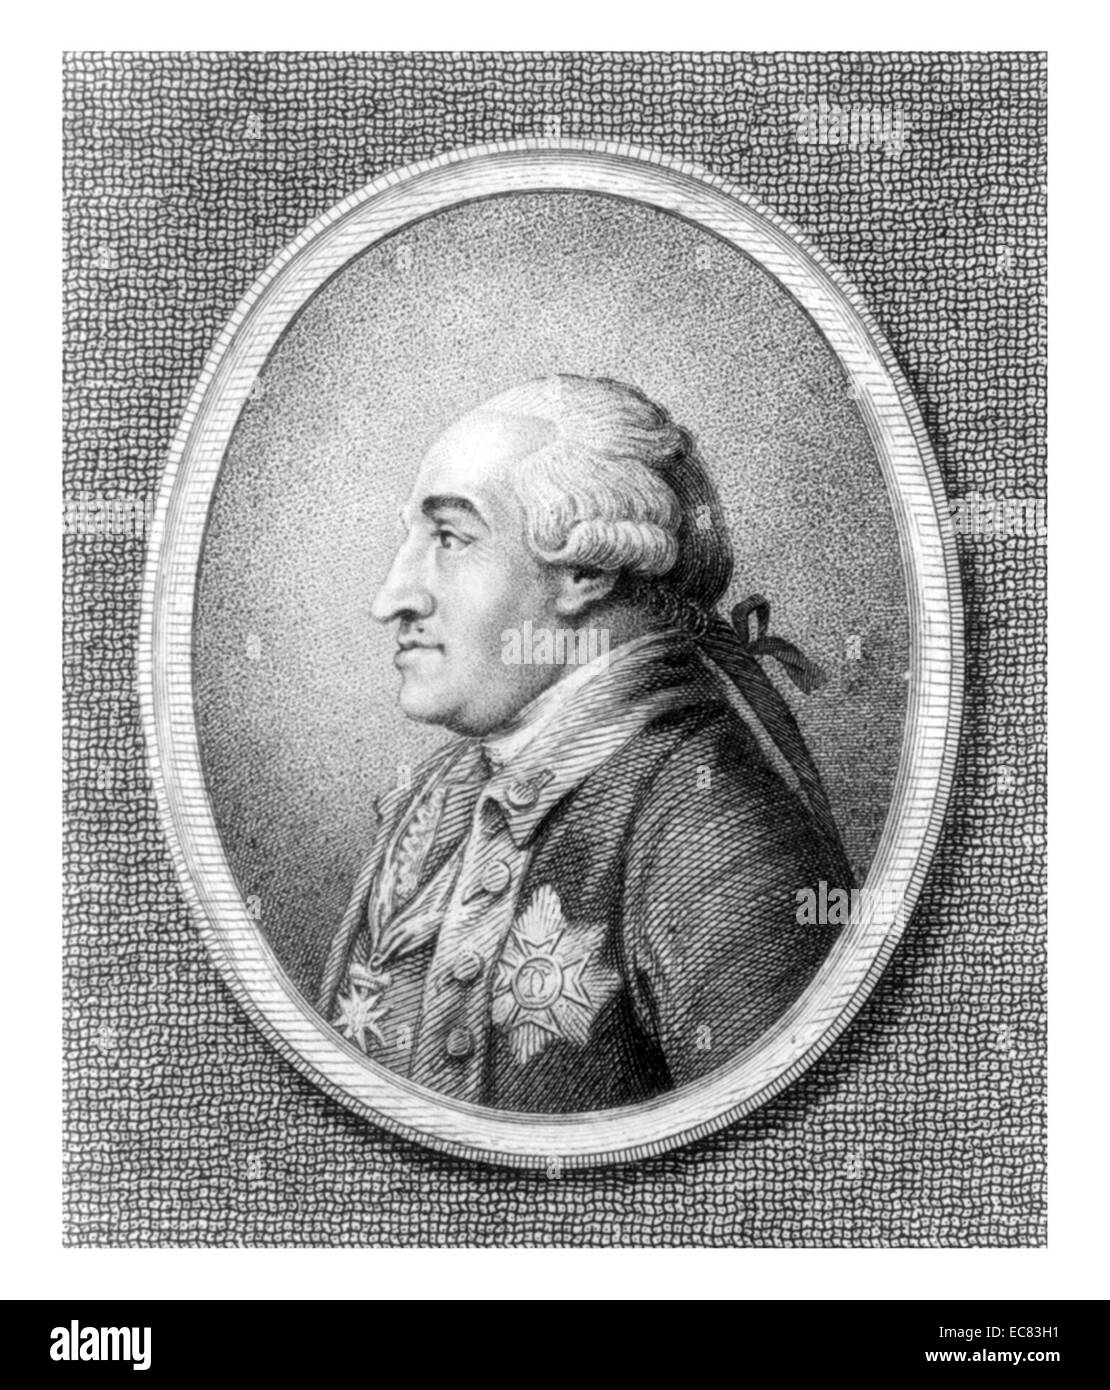 Friedrich von Steuben ( 1730 - 1794), Baron von Steuben è stato prussiano-data di nascita ufficiale militare che ha servito come ispettore generale e il maggiore generale dell'esercito continentale durante la guerra rivoluzionaria americana Foto Stock